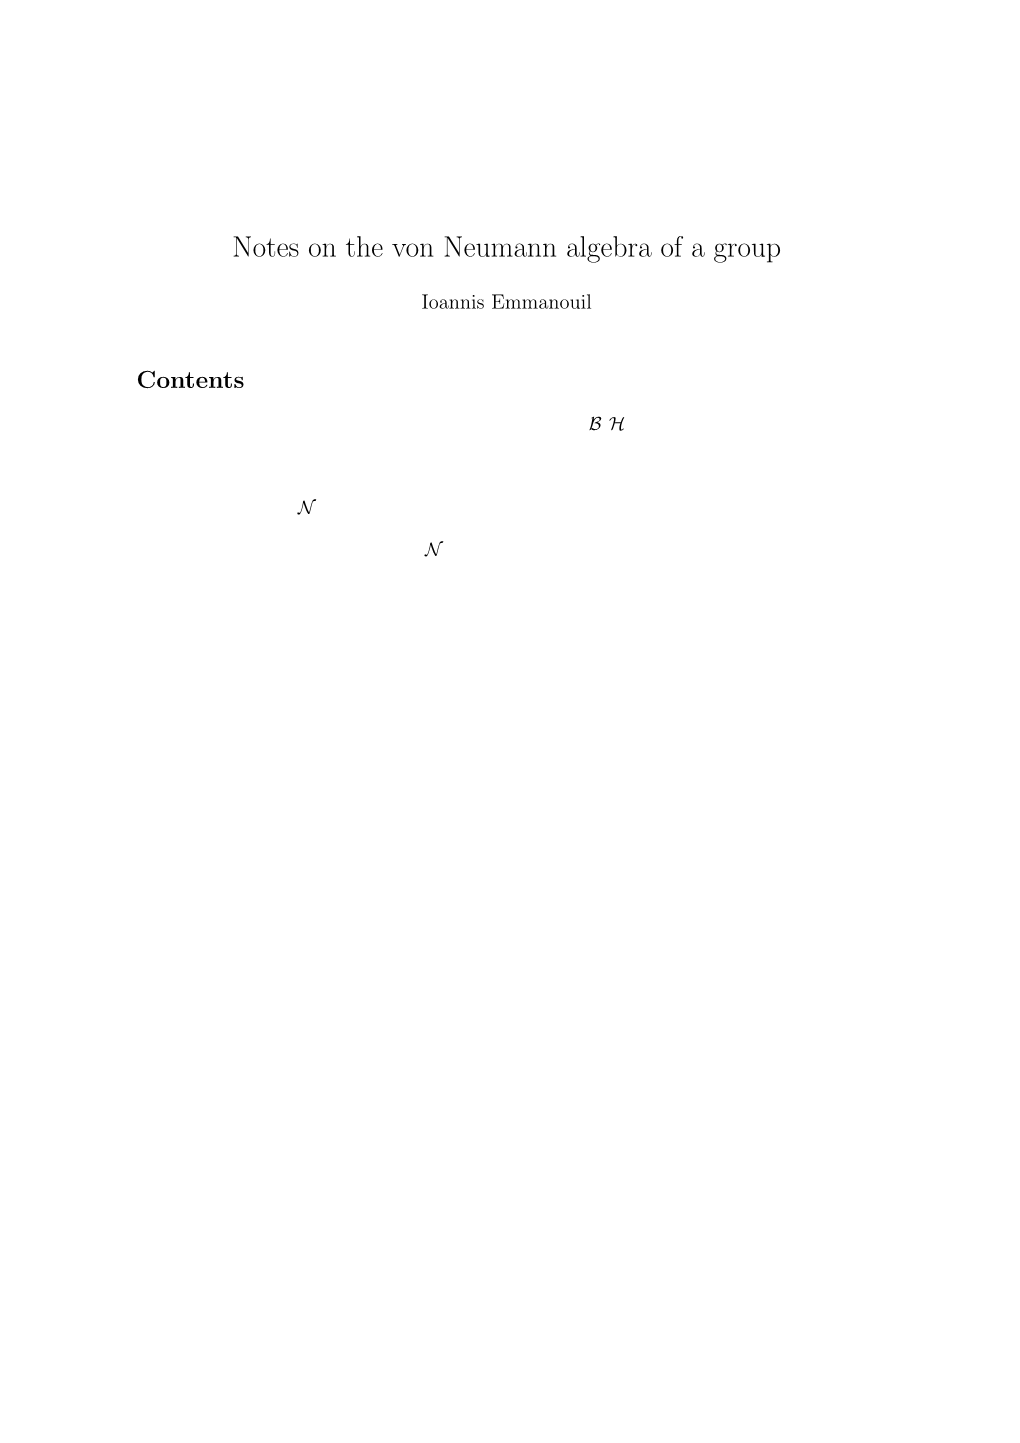 Notes on the Von Neumann Algebra of a Group